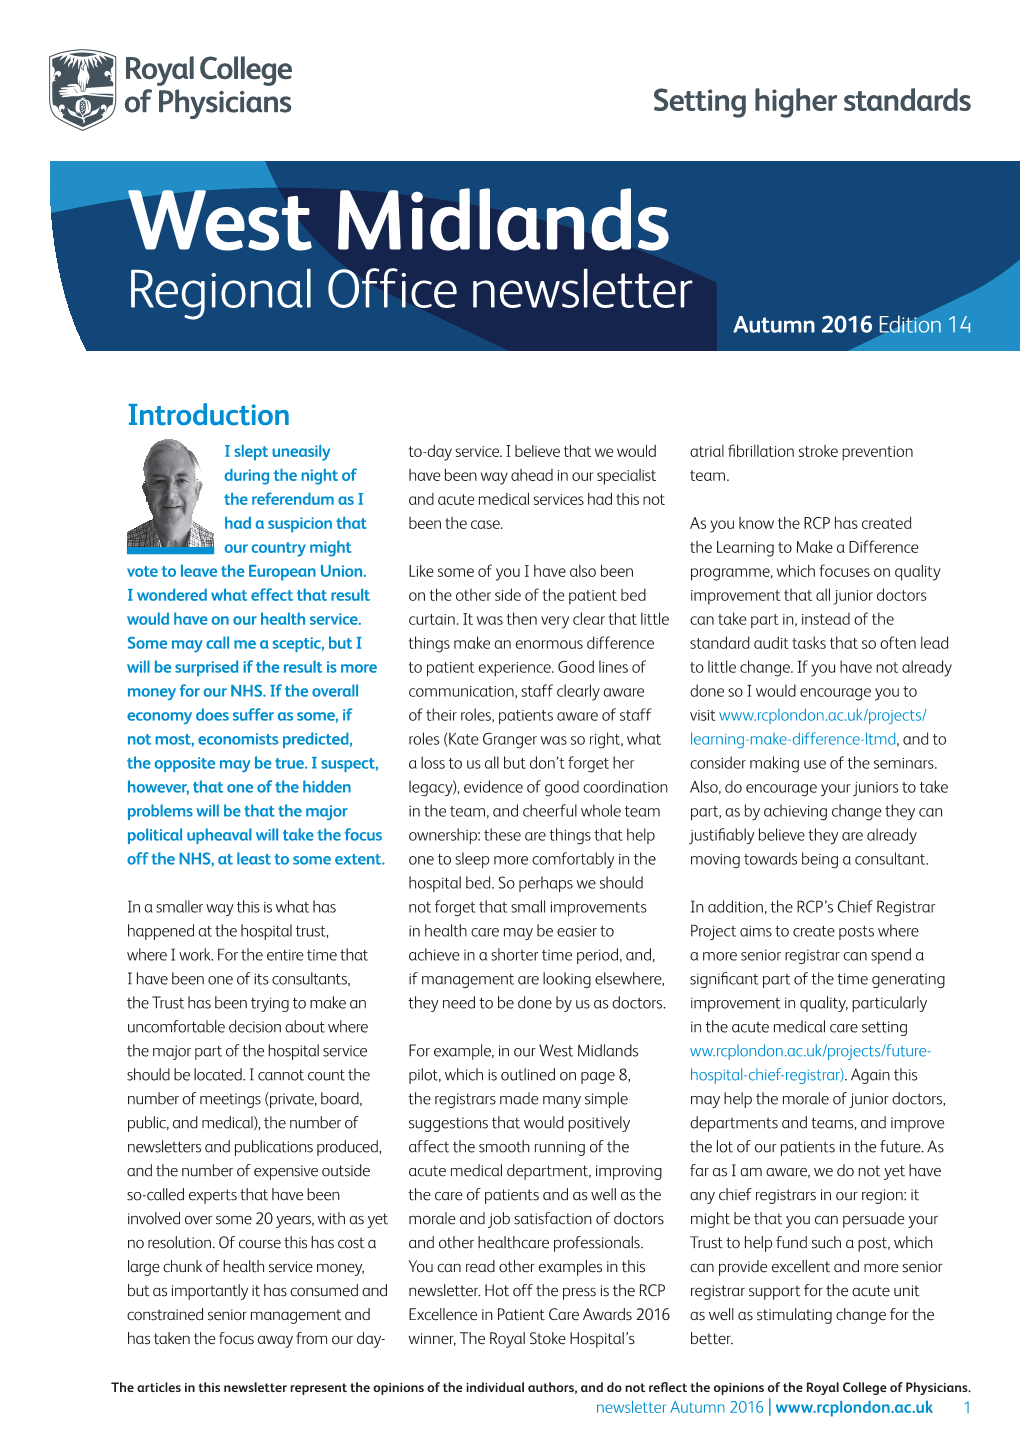 West Midlands Regional Office Newsletter Autumn 2016 Edition 14